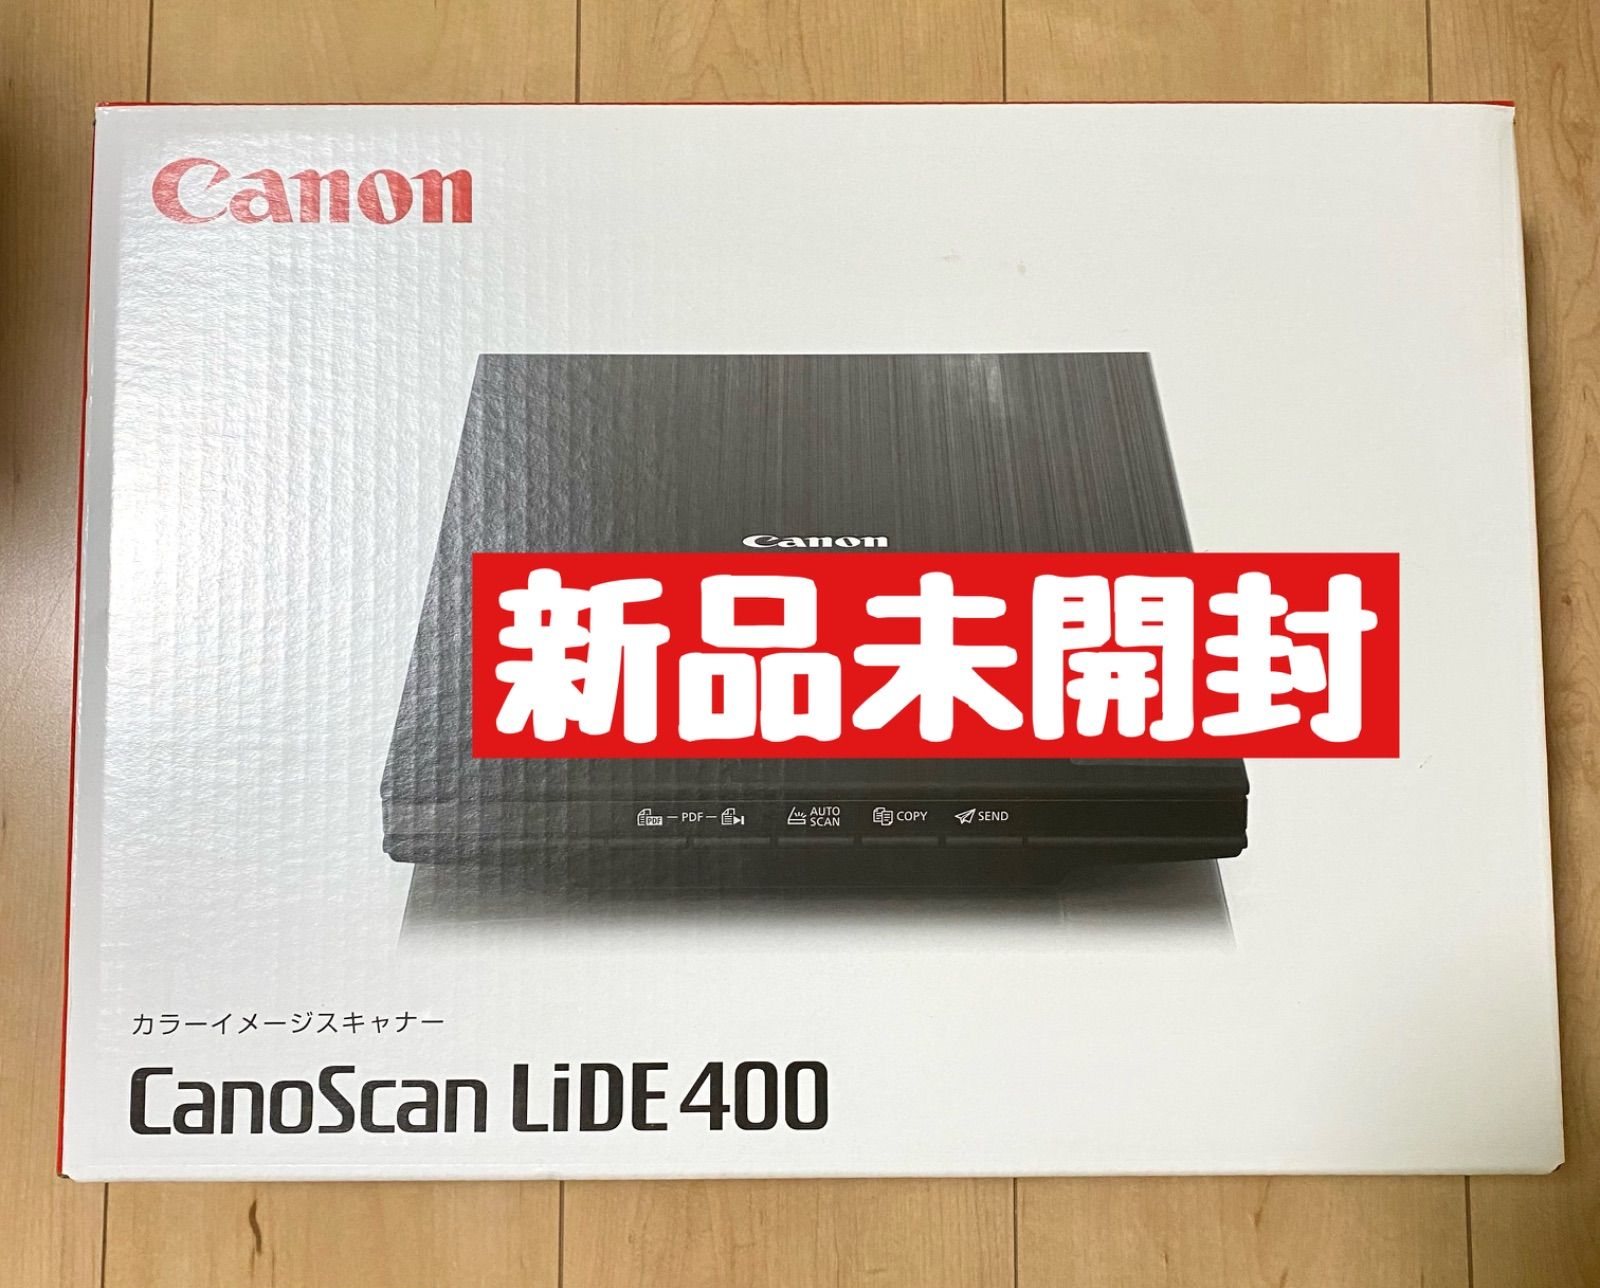 Canon カラーフラットベッドスキャナ CANOSCAN LIDE 400 - 3